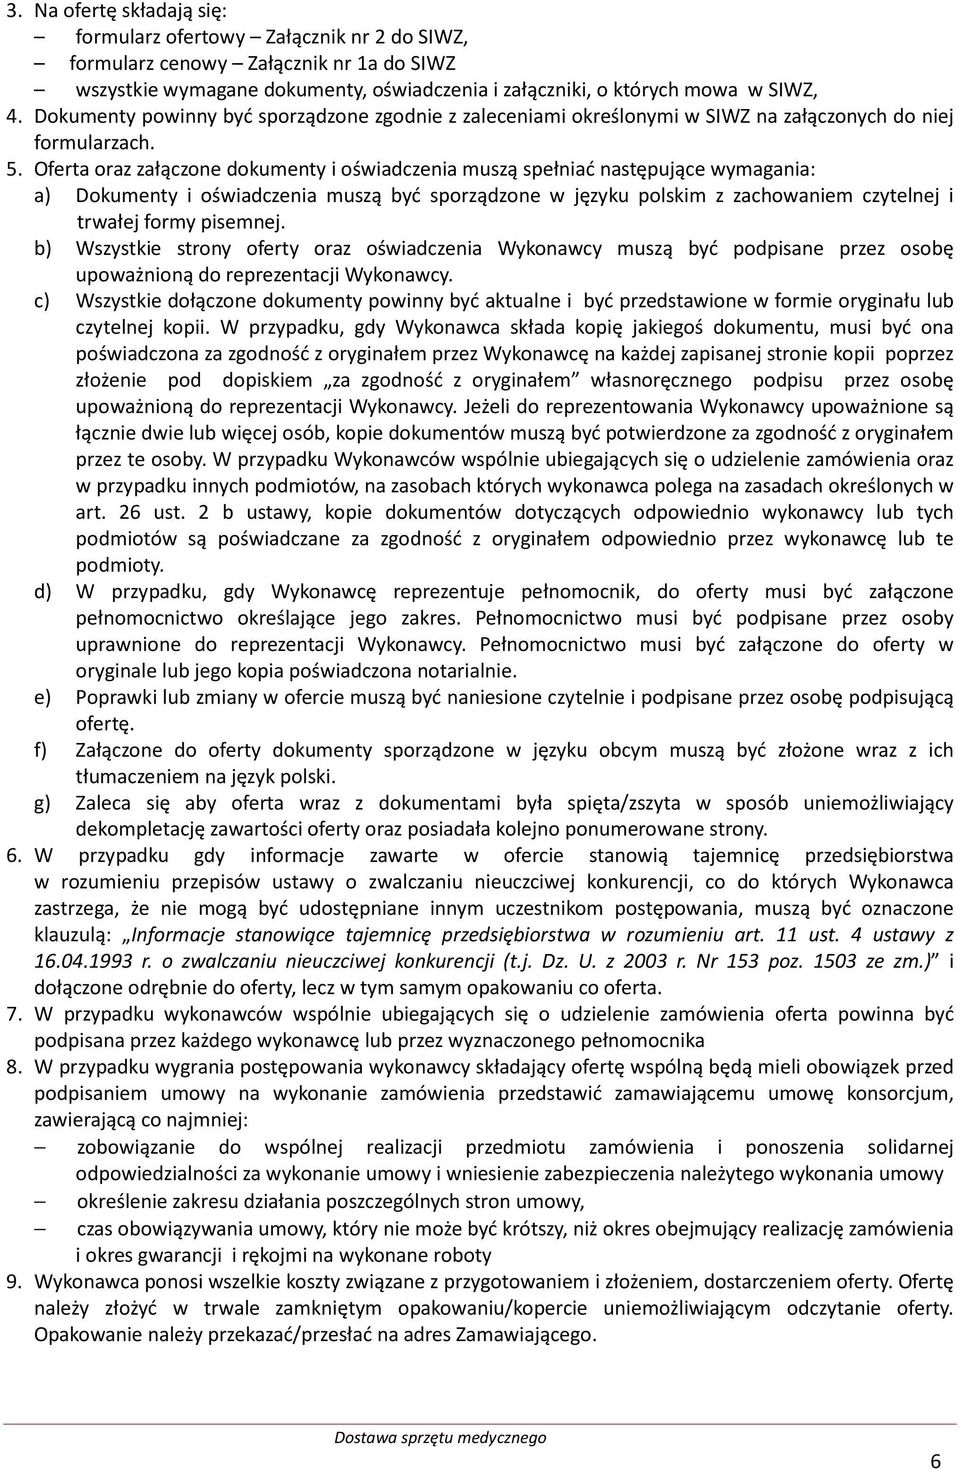 Oferta oraz załączone dokumenty i oświadczenia muszą spełniać następujące wymagania: a) Dokumenty i oświadczenia muszą być sporządzone w języku polskim z zachowaniem czytelnej i trwałej formy